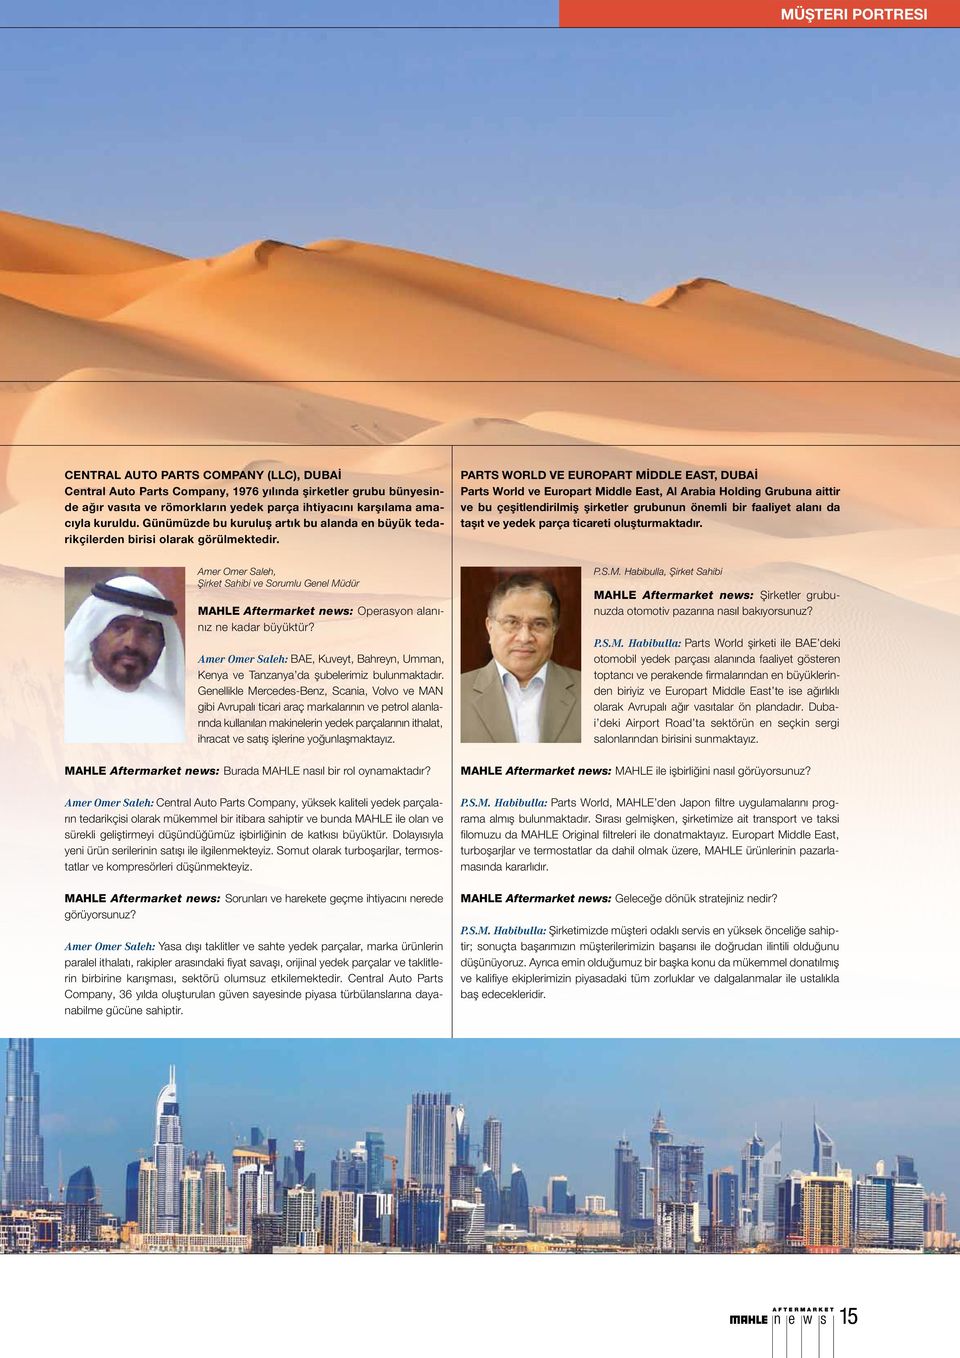 Parts World VE Europart Middle East, Dubai Parts World ve Europart Middle East, Al Arabia Holding Grubuna aittir ve bu çeşitlendirilmiş şirketler grubunun önemli bir faaliyet alanı da taşıt ve yedek